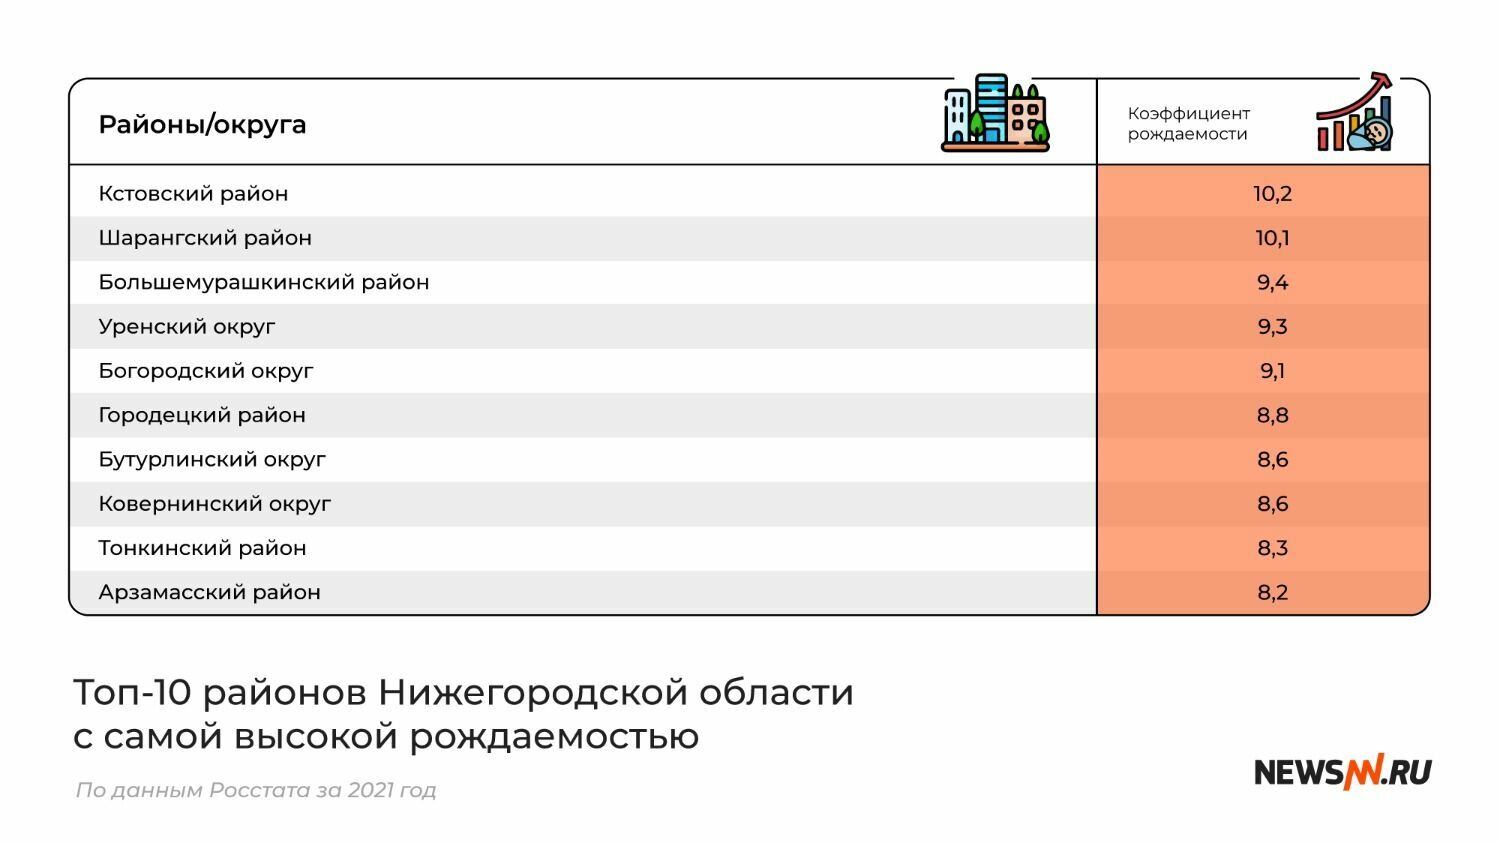 Топ-10 районов Нижегородской области с самой высокой рождаемостью